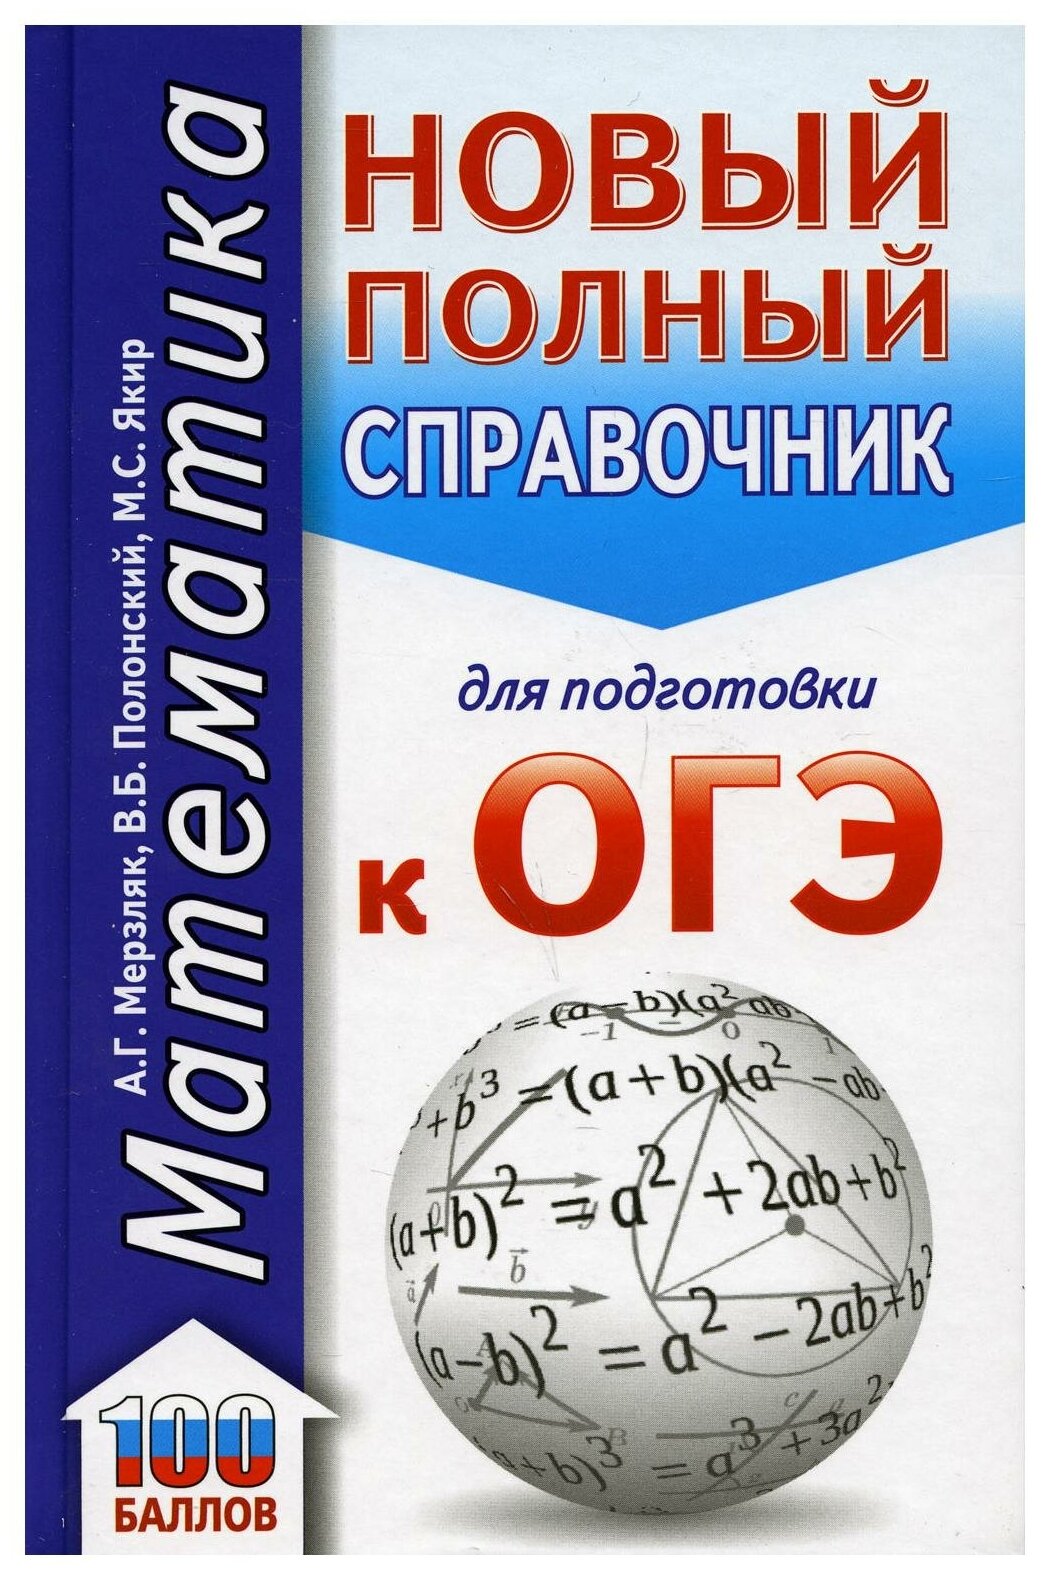 ОГЭ. Математика (70x90/32). Новый полный справочник для подготовки к ОГЭ - фото №1